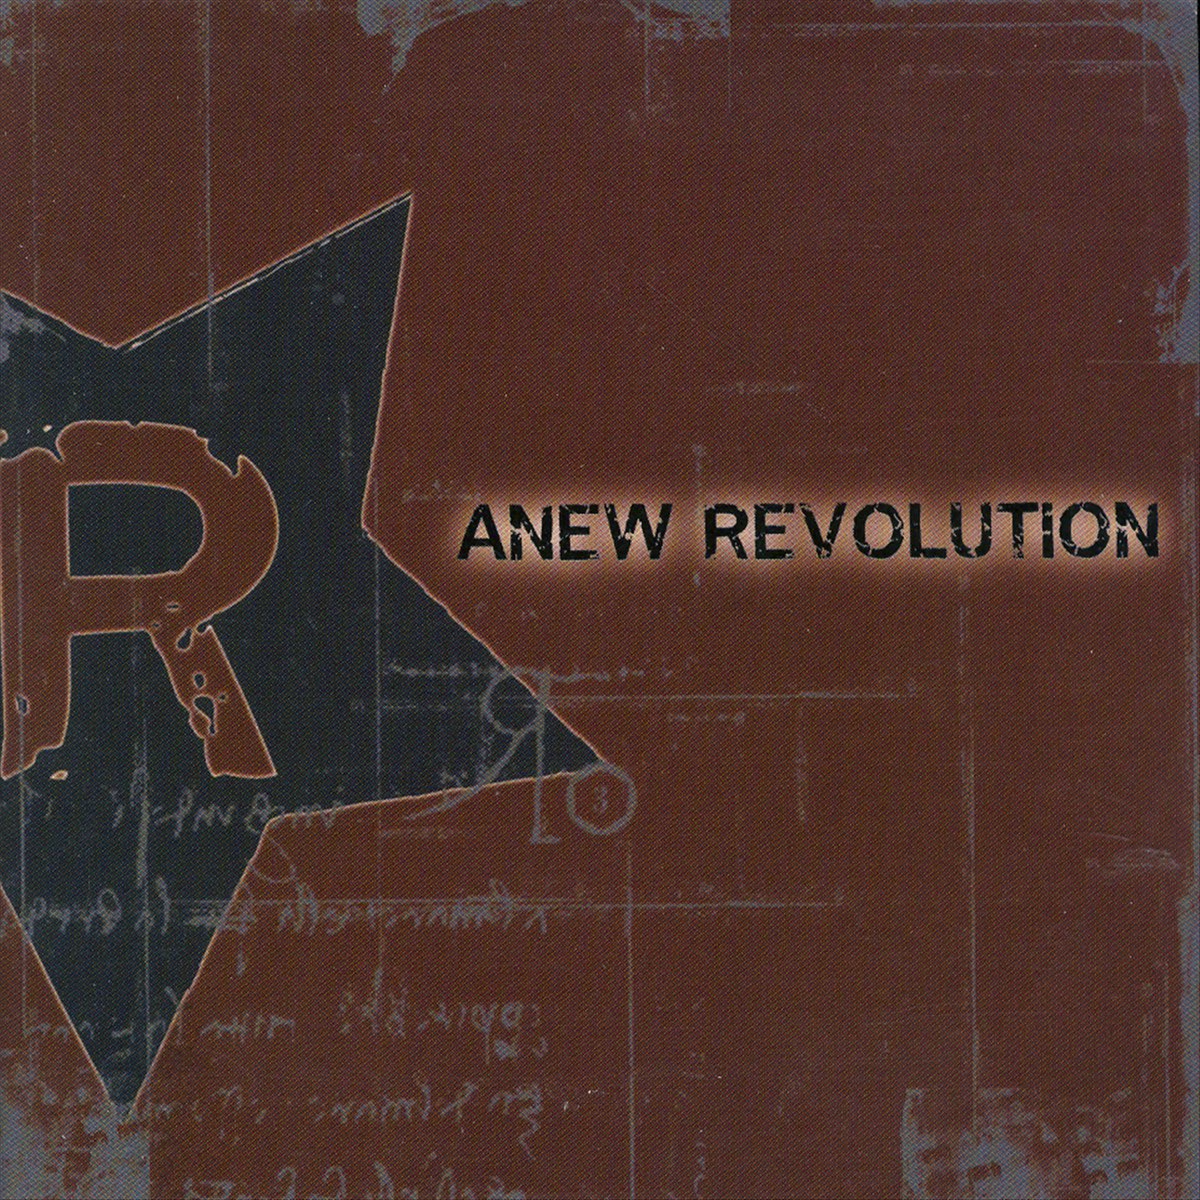 Anew Revolution. Anew Revolution - Rise. Revolution обложка картинка. Anew Revolution - Generation. Revolution музыка